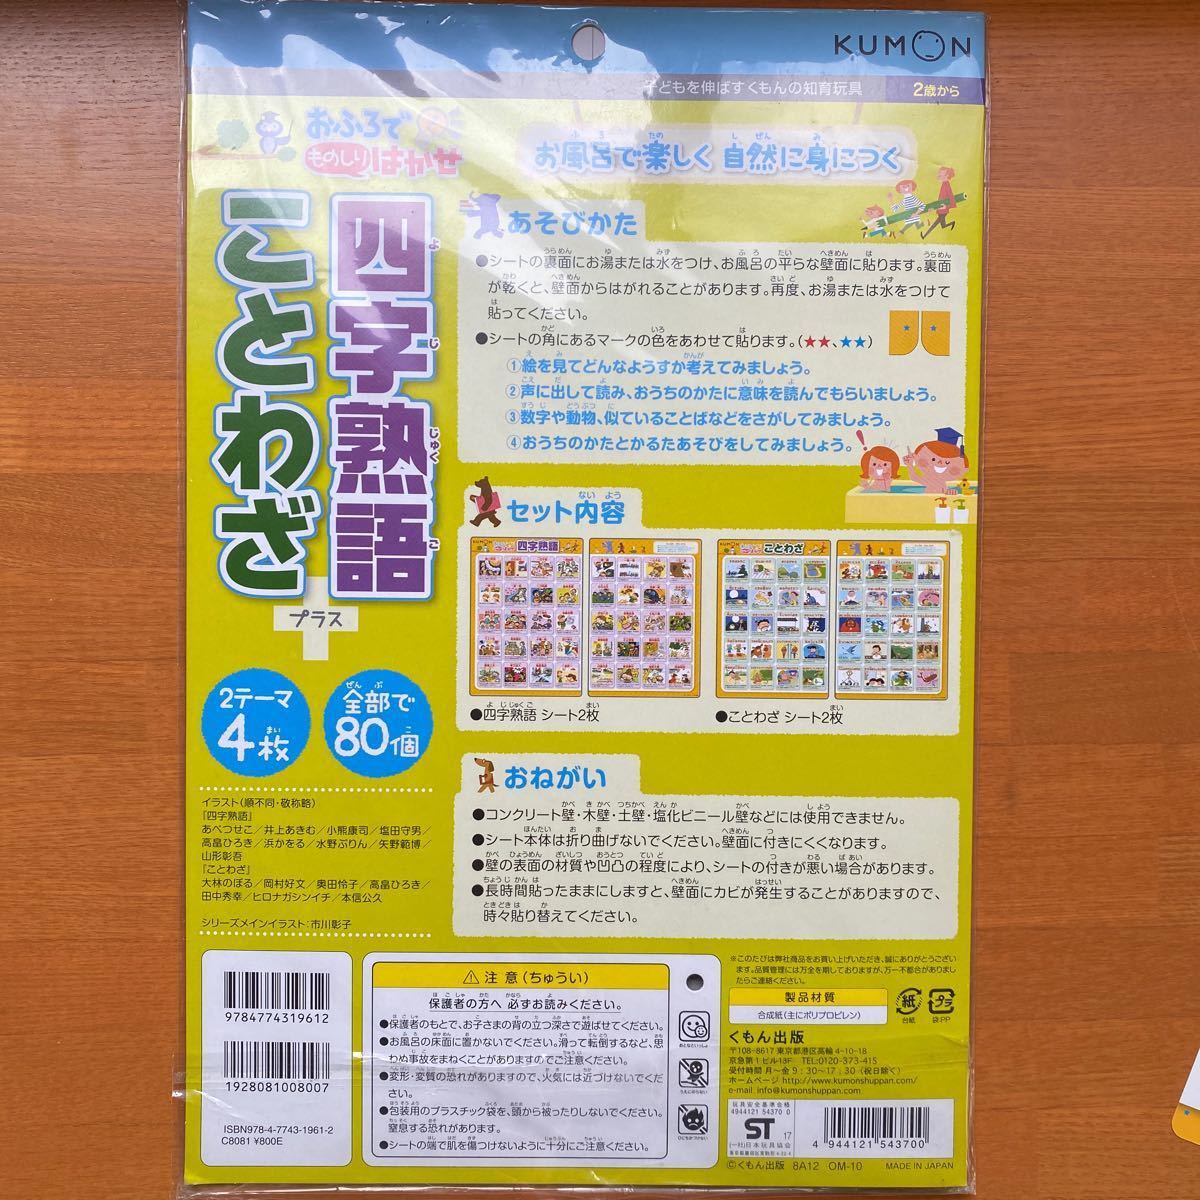 237円 送料無料 激安 お買い得 キ゛フト OM-10 四字熟語 ことわざ くもん出版